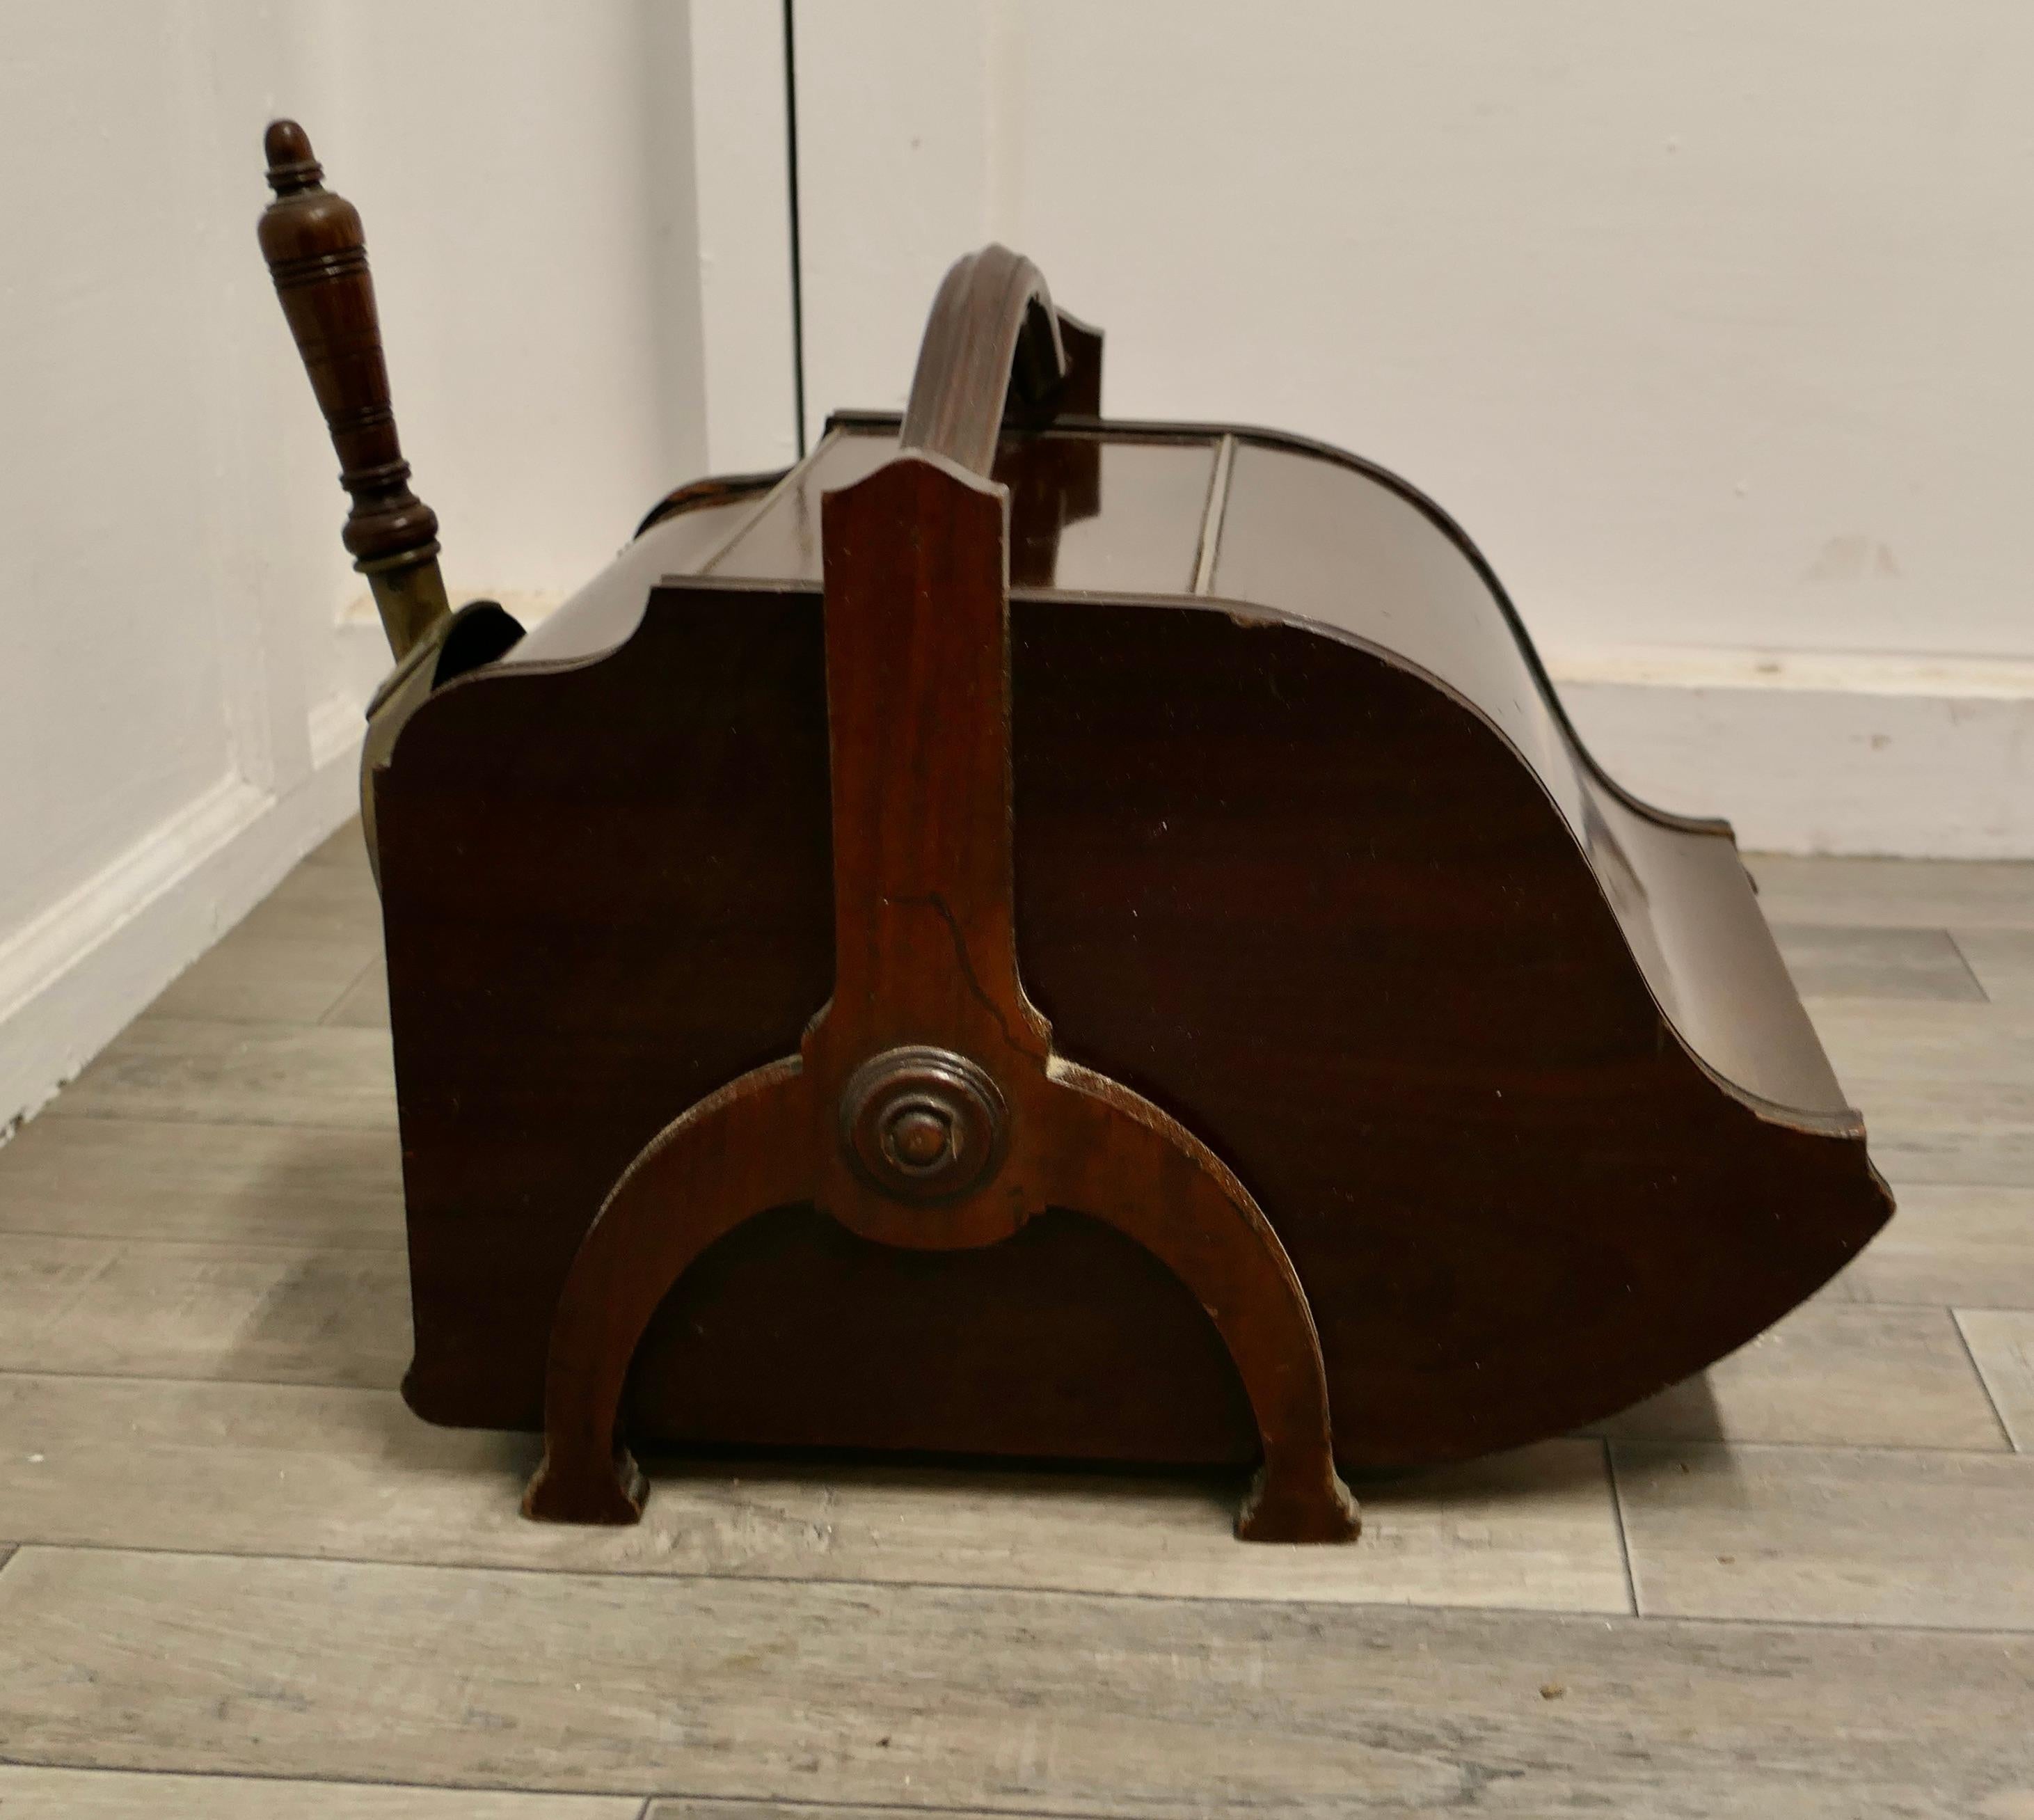 Ein viktorianischer doppelendiger Kohlenkasten mit Deckel und Schaufel

Ein charmantes Stück von nützlichen viktorianischen Möbeln, die Box hat ein Klavier förmige Öffnung vorne öffnet es auch auf der Rückseite mit einer Schaufel und Halter und ein